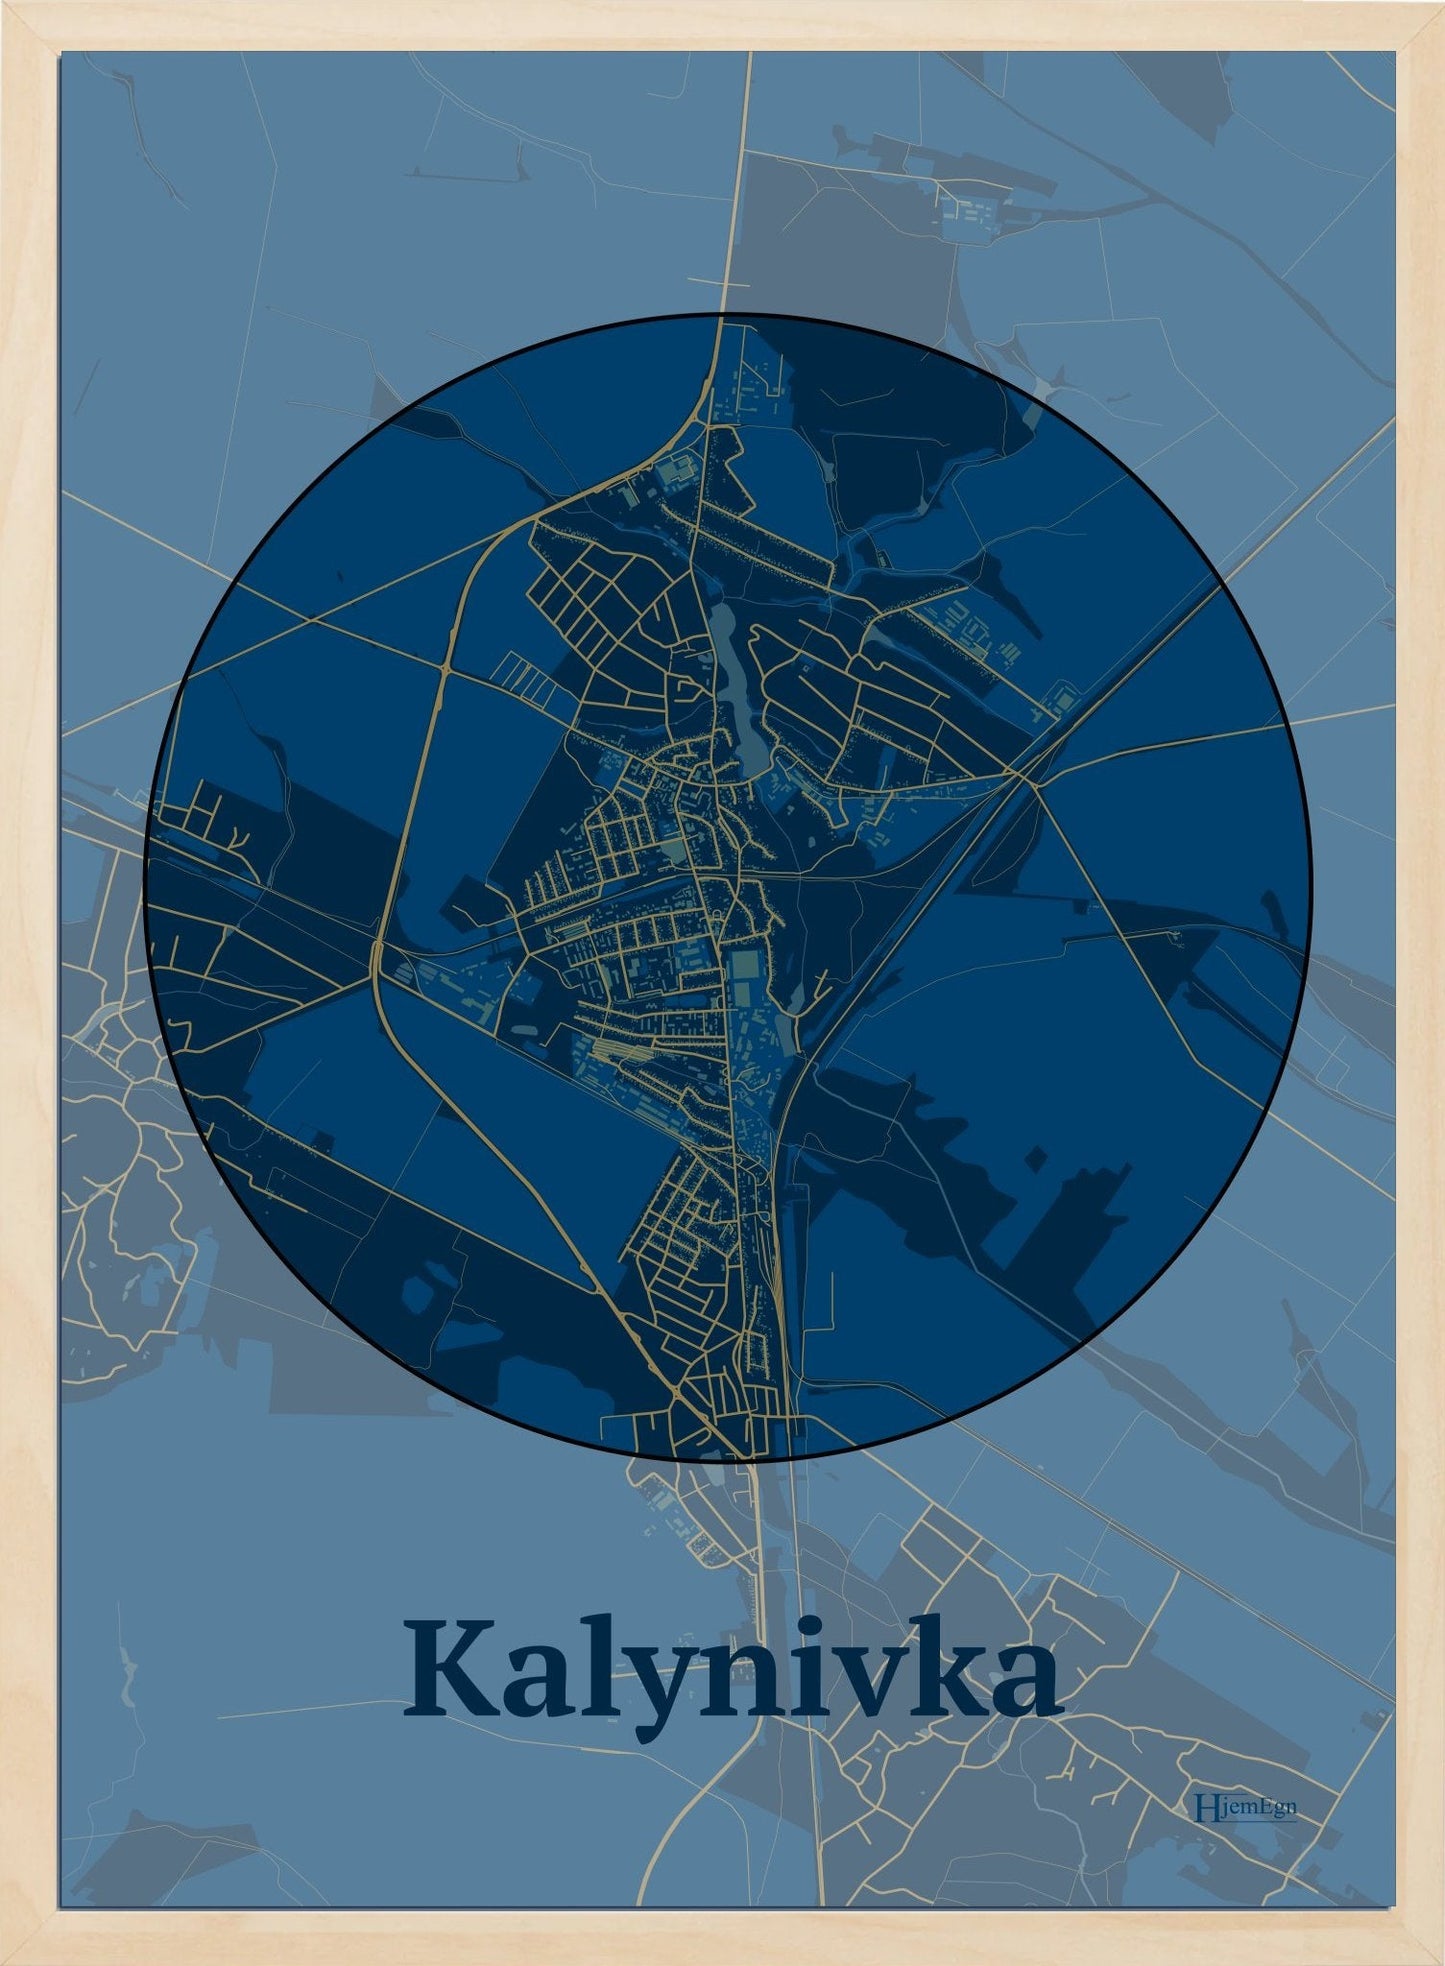 Kalynivka plakat i farve mørk blå og HjemEgn.dk design centrum. Design bykort for Kalynivka